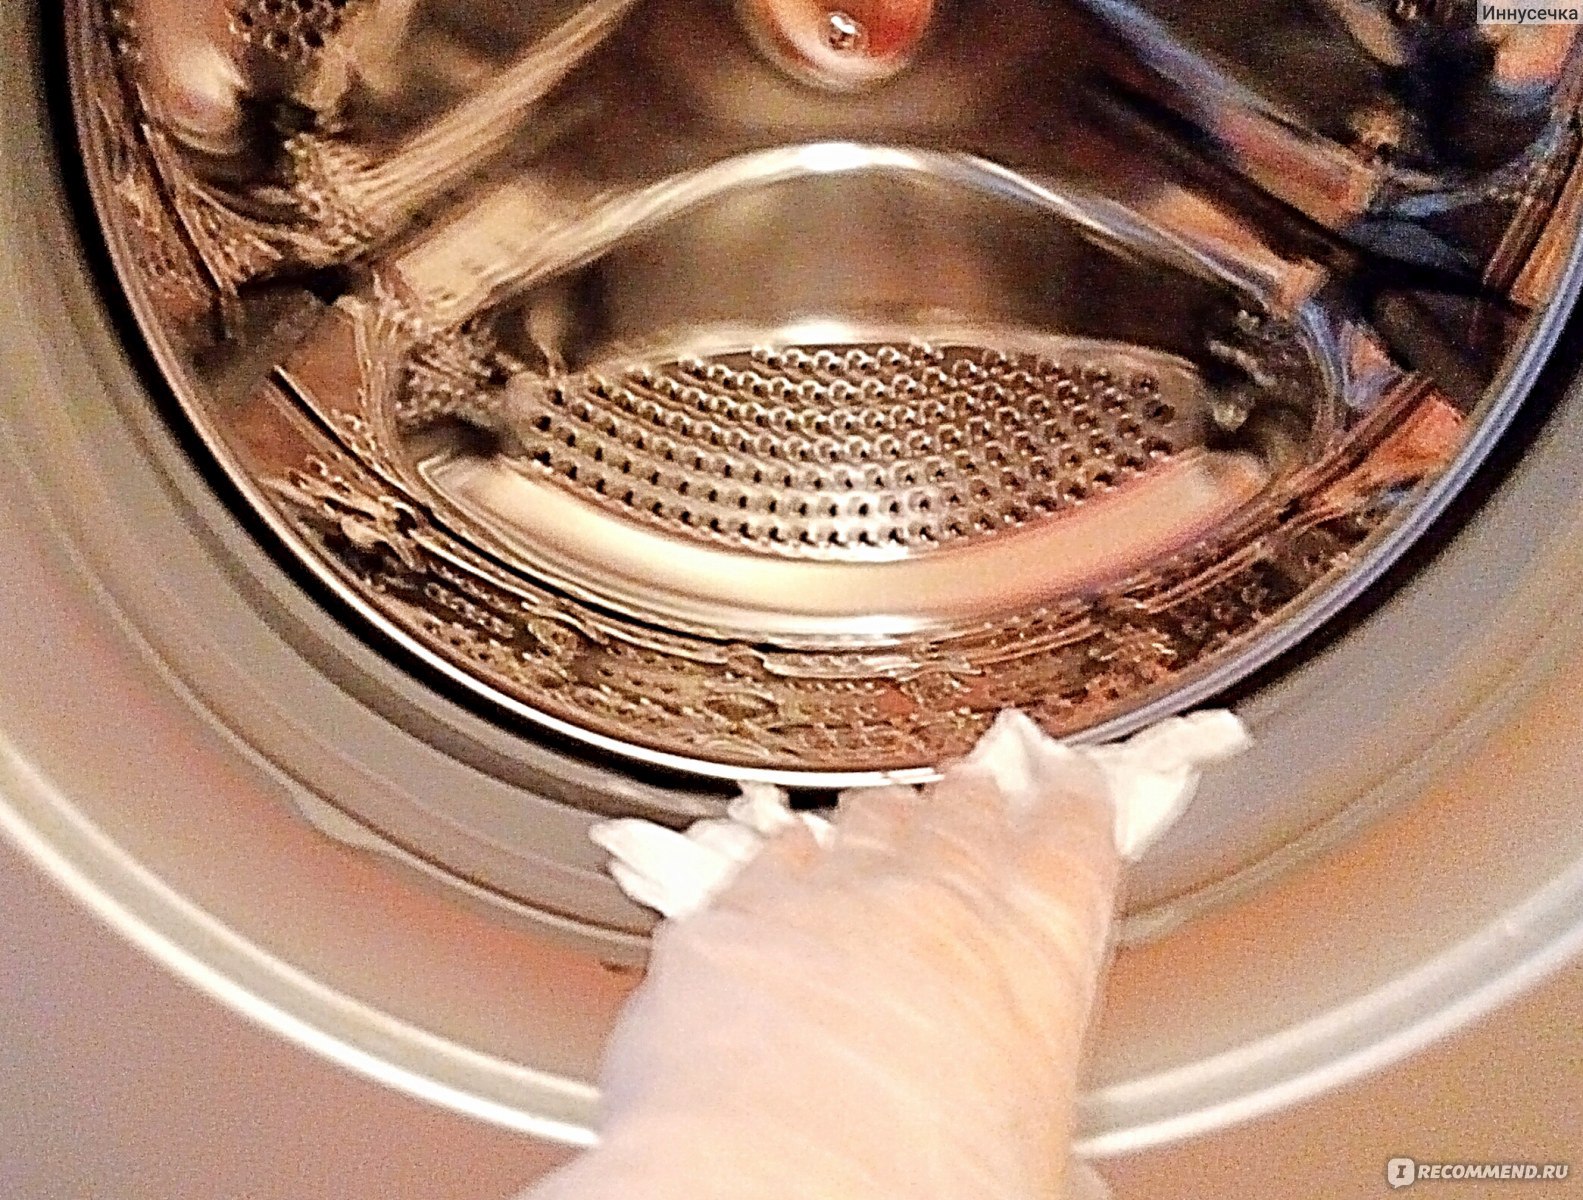 Воняет стиральная машина. Барабан машинки. Чистка стиральной машины. Запах из стиральной машины средства. Пахнет из барабана стиральной машины.